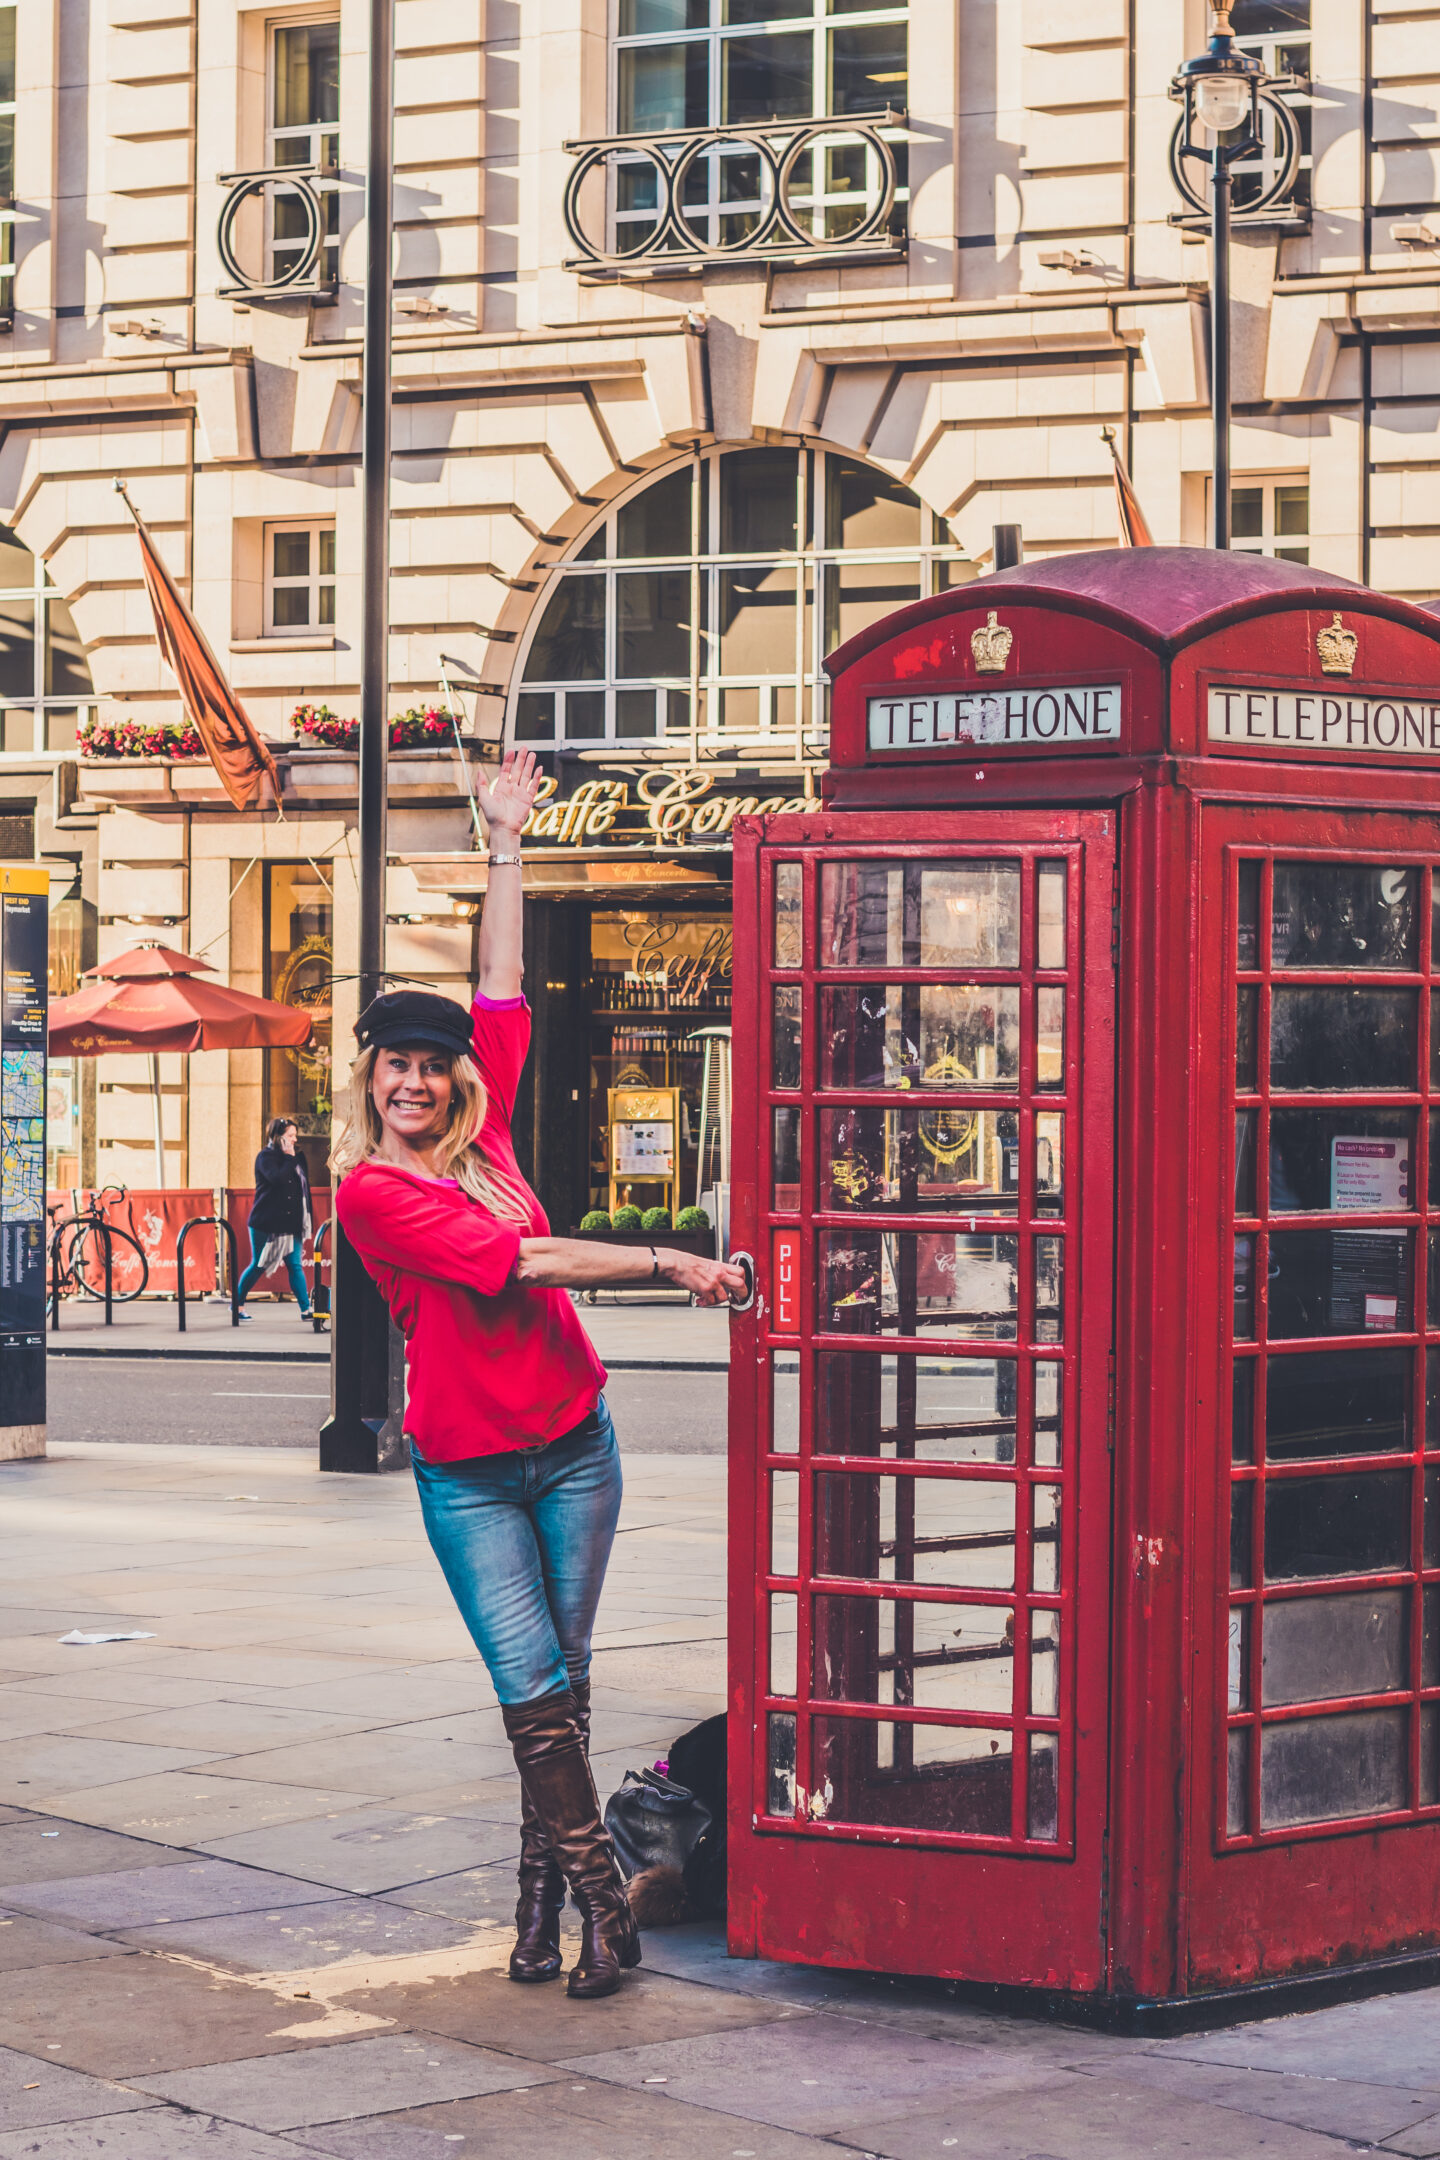 London Baby! – Best Instagram spots in London